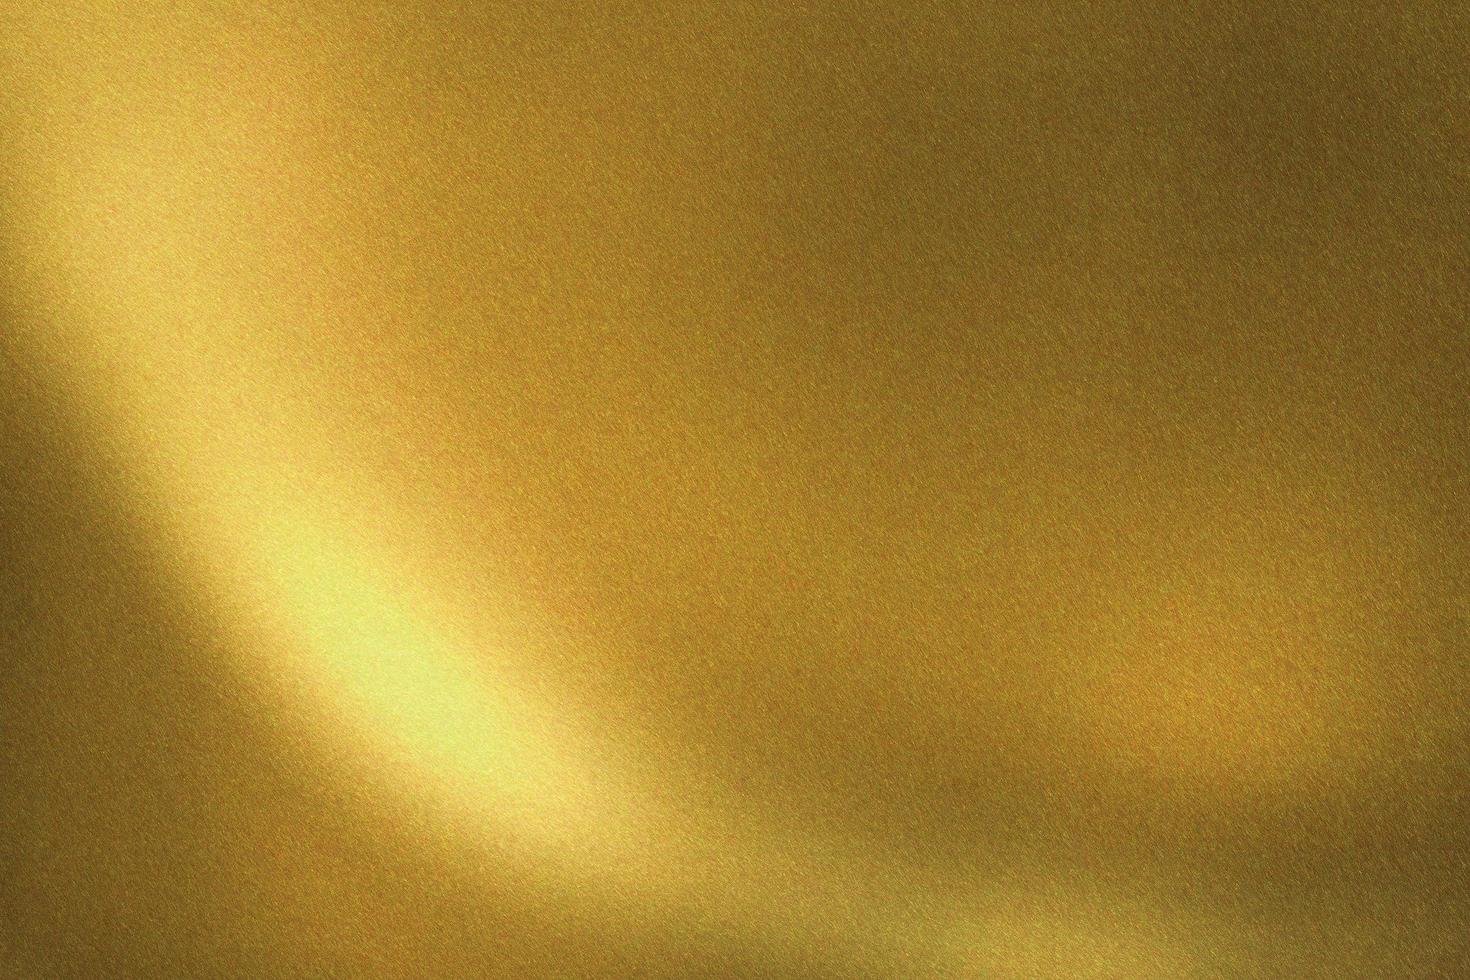 lumière qui brille sur un mur en métal brossé doré, fond de texture abstraite photo